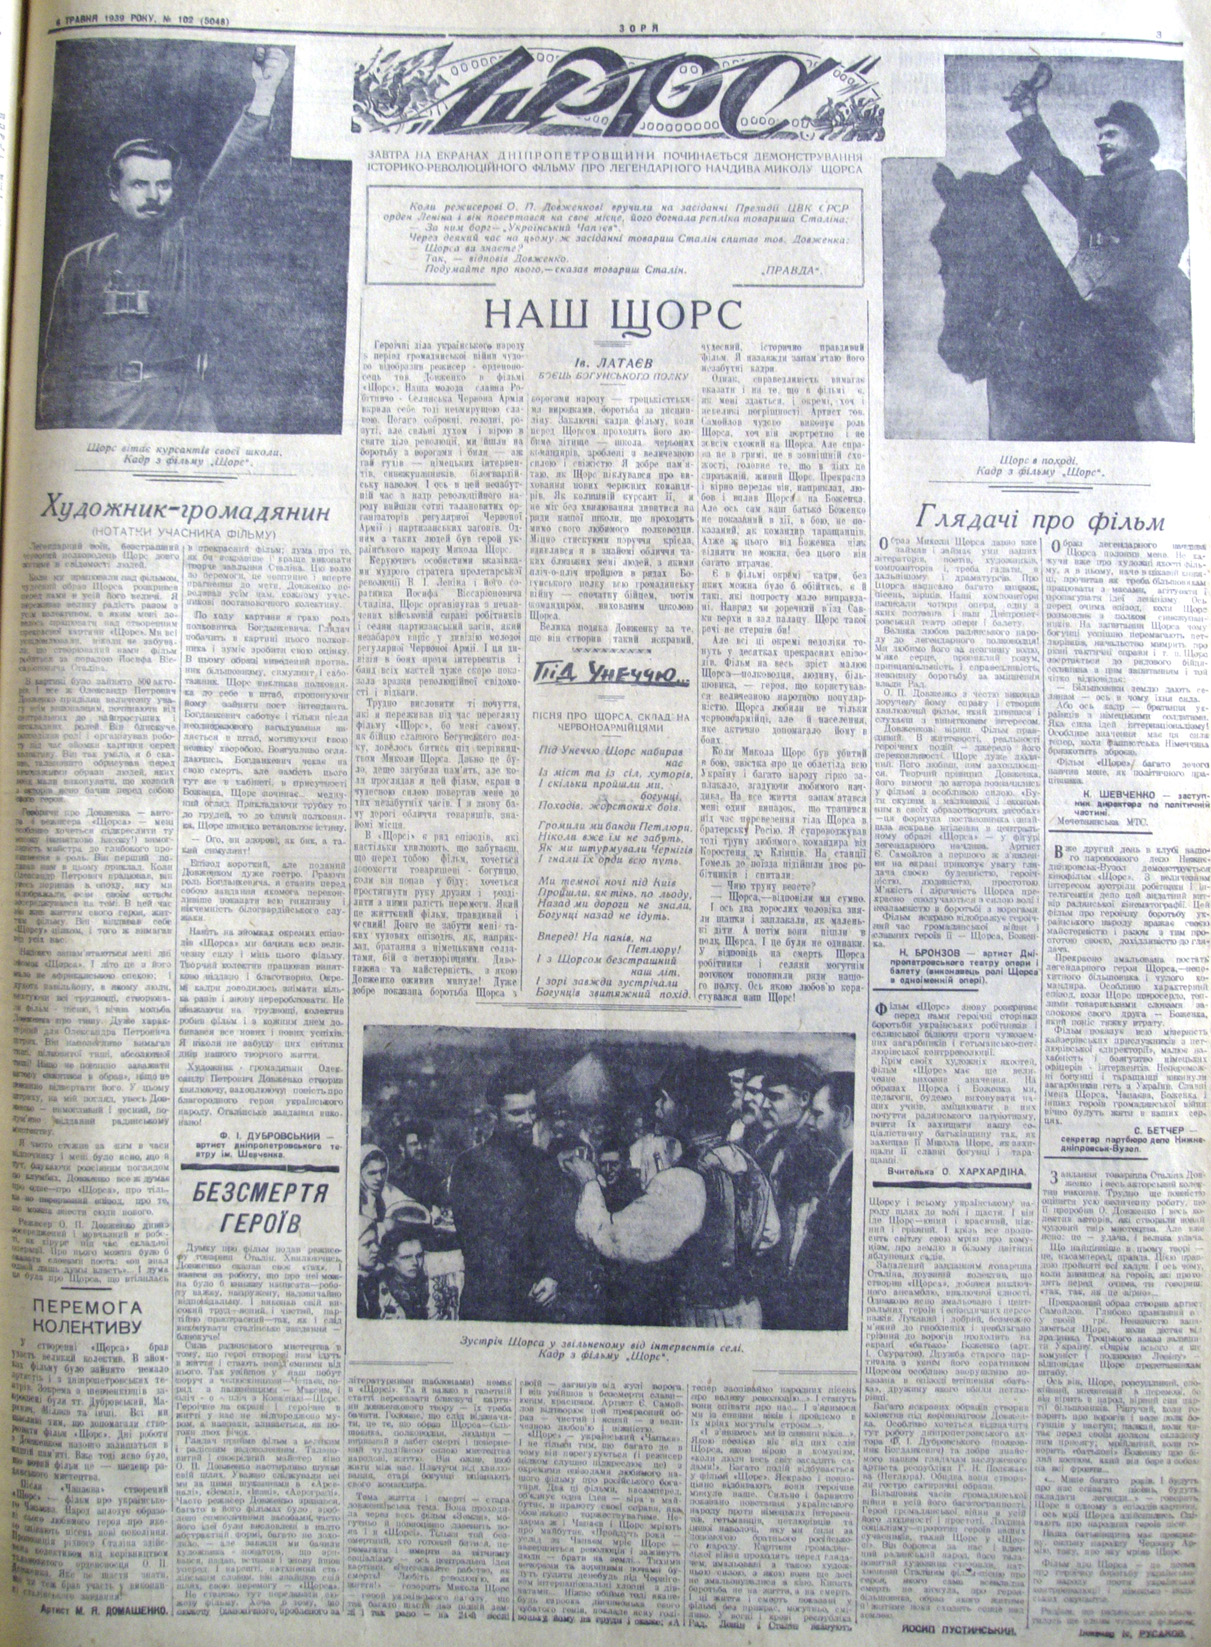  Стаття в газеті «Зоря» 6 травня 1939 року. З архіву автора.